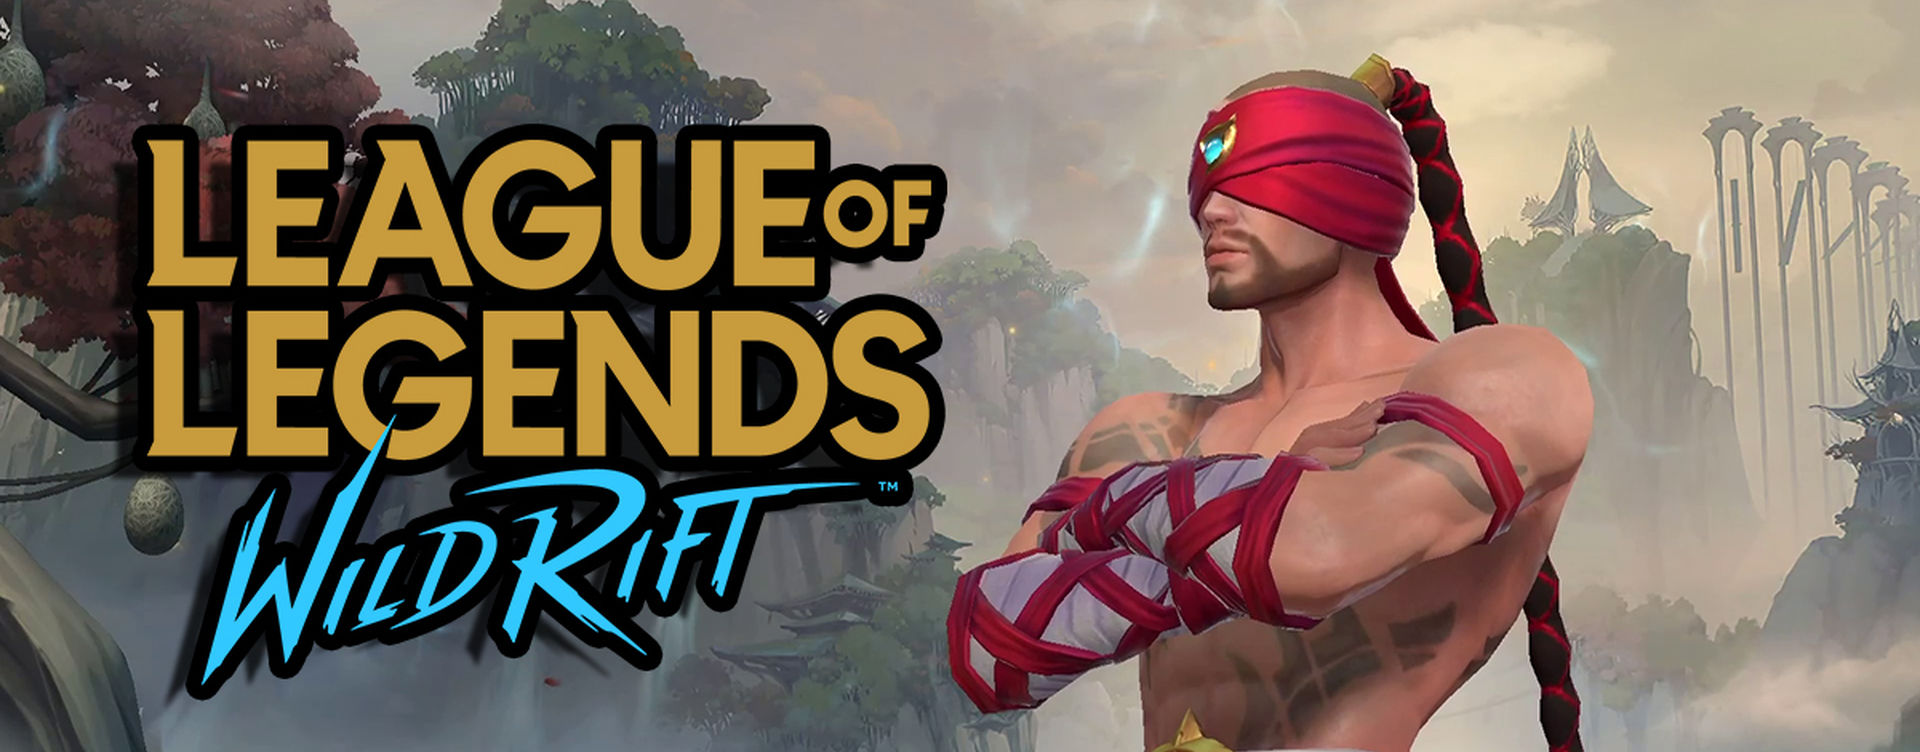 League of Legends: Wild Rift': Fecha de lanzamiento en Latinoamérica y requisitos  mínimos, Android, iOS